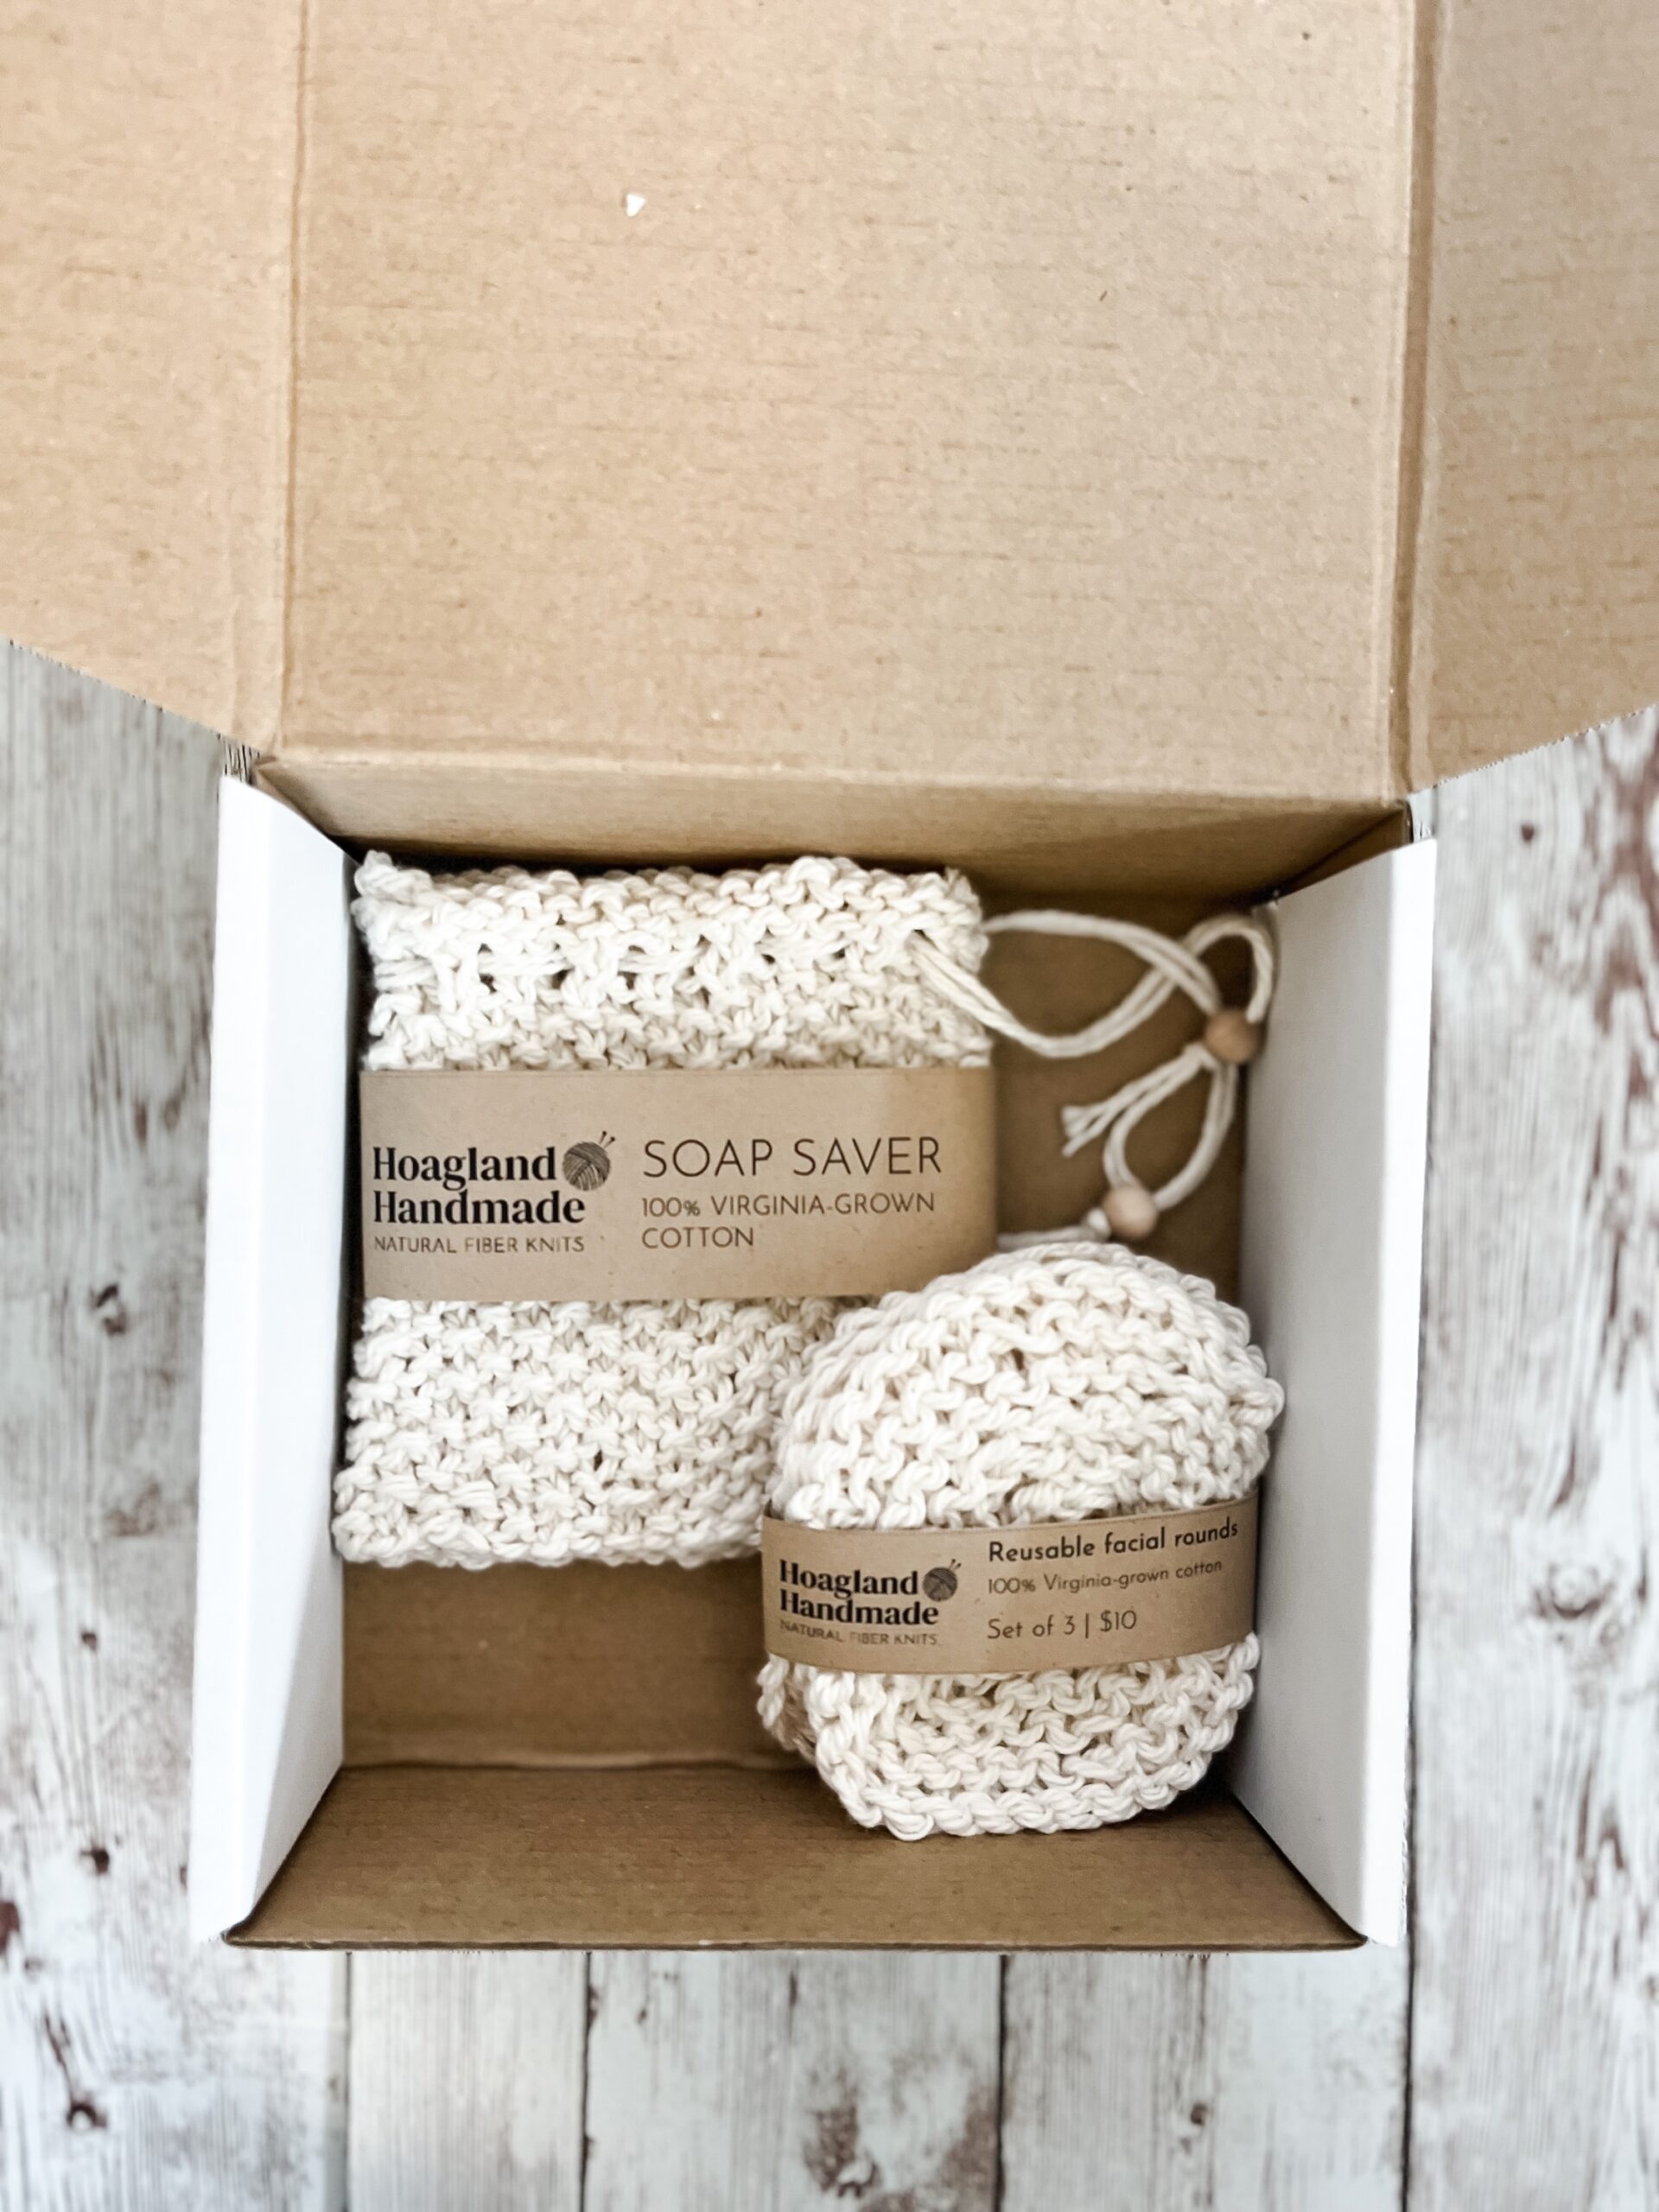 A white box contains a Virginia-grown cotton soap saver and set of reusable facial rounds.